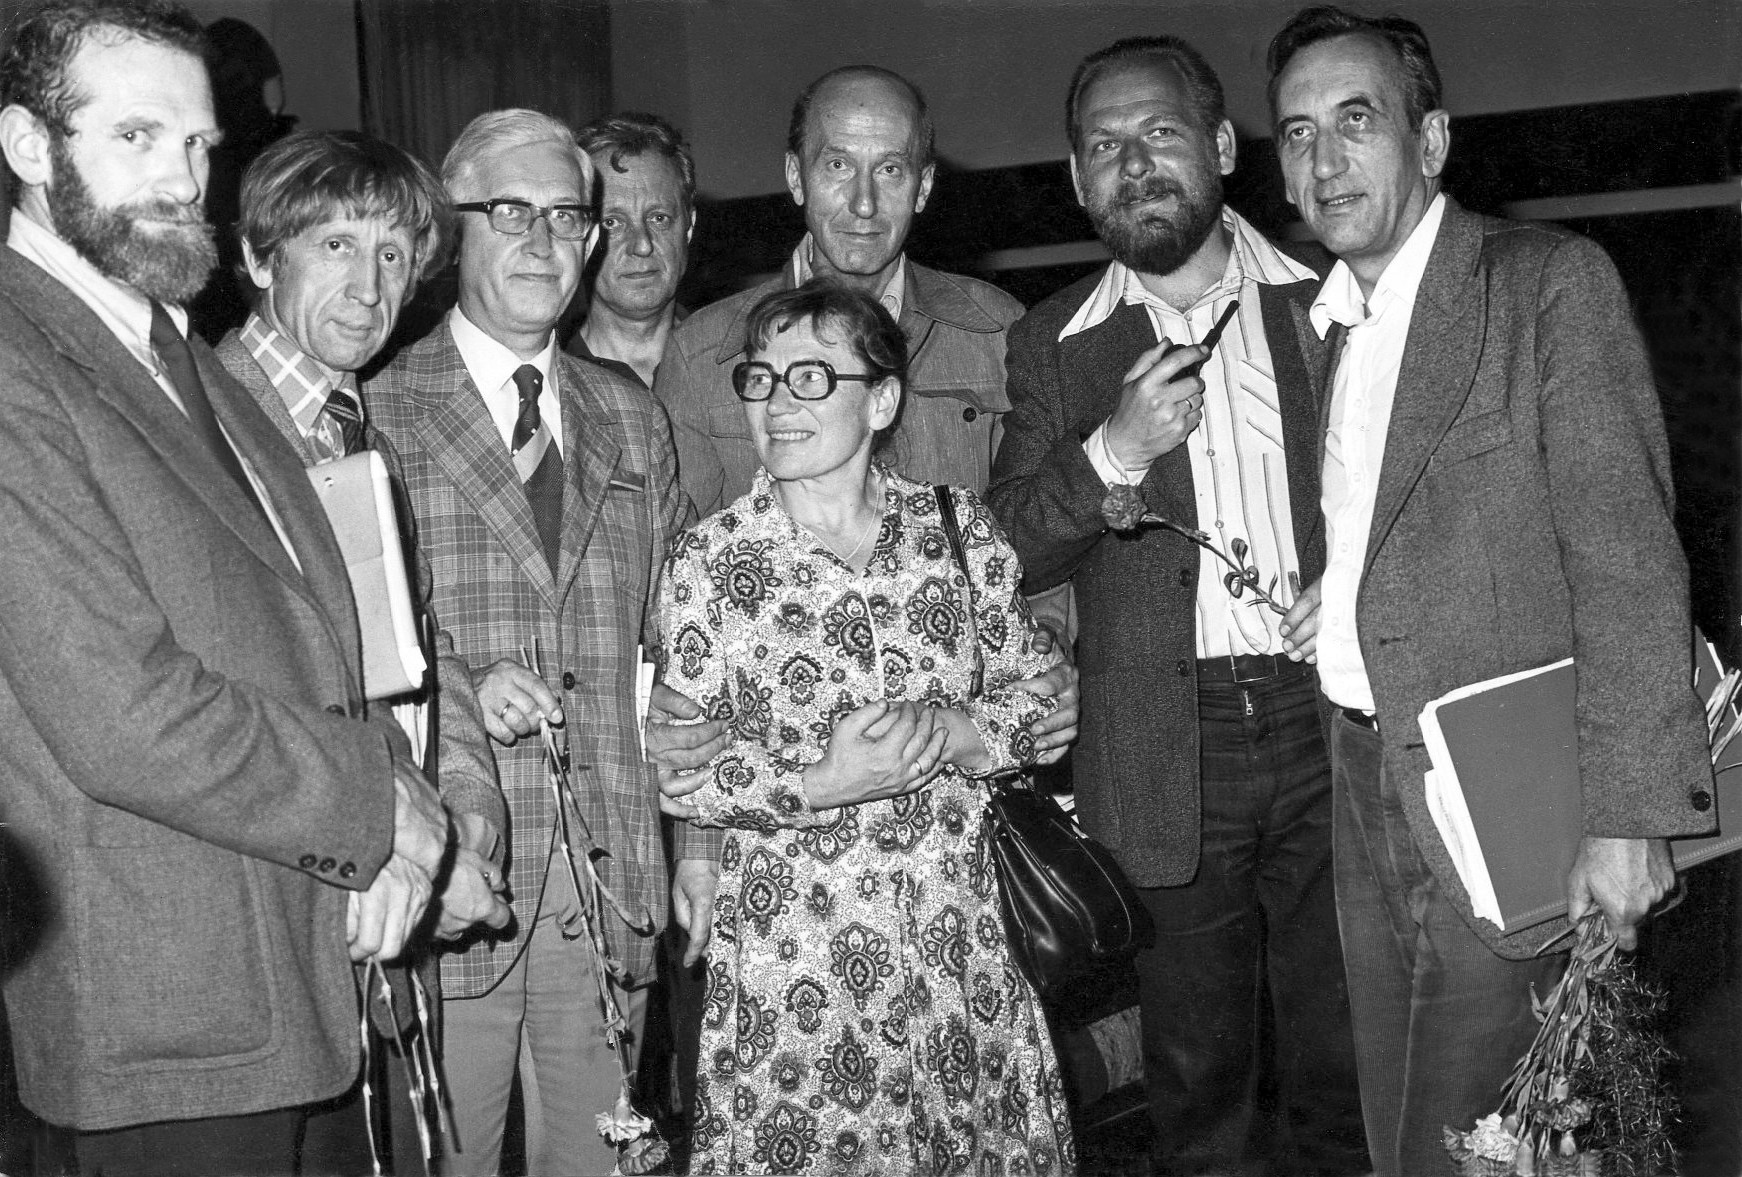 Z doradcami strajku w stoczni Bronisławem Geremkiem, Tadeuszem Kowalikiem, Jerzym Stembrowiczem, Andrzejem Wielowieyskim, Janem Strzeleckim , Bohdanem Cywińskim i Tadeuszem Mazowieckim, Gdańsk, 31 sierpnia 1980 r.